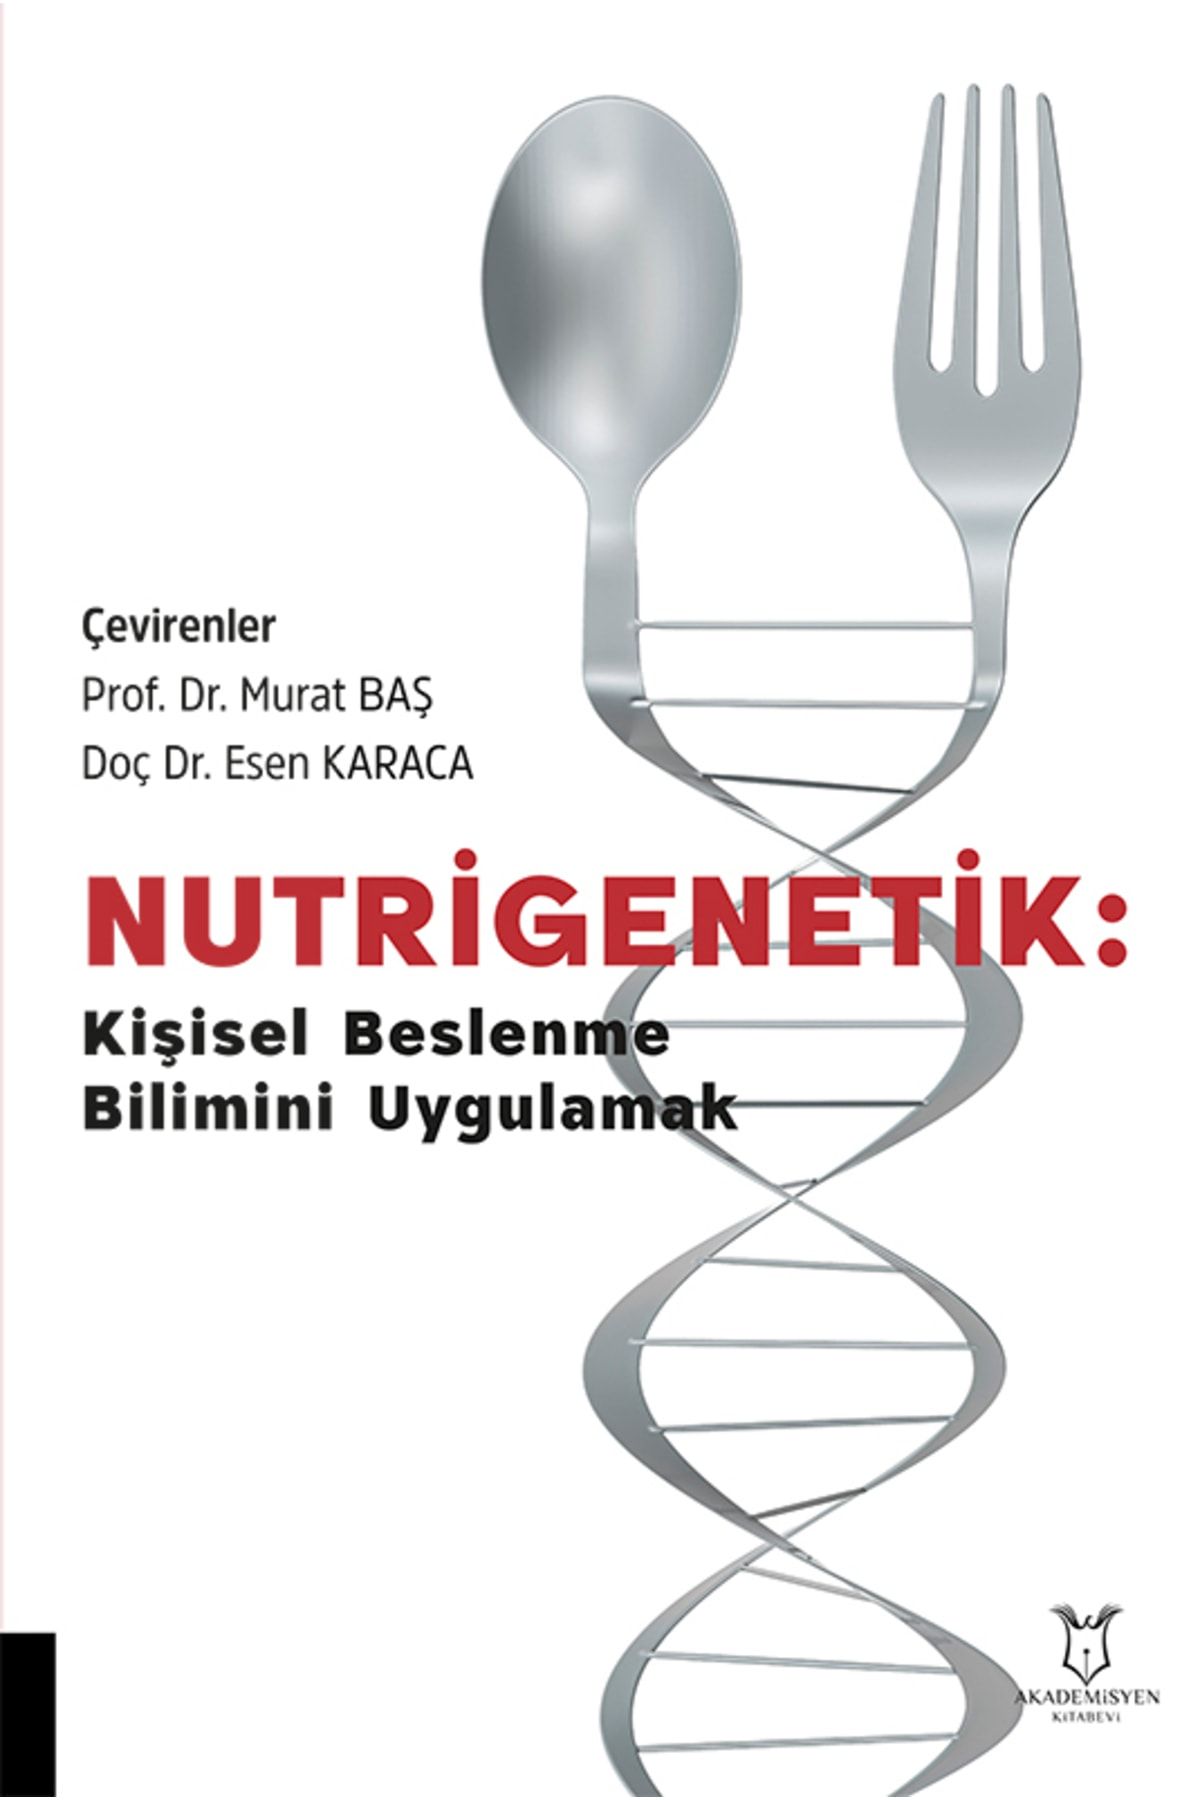 Akademisyen Kitabevi Nutrigenetik Kişisel Beslenme Bilimini Uygulamak